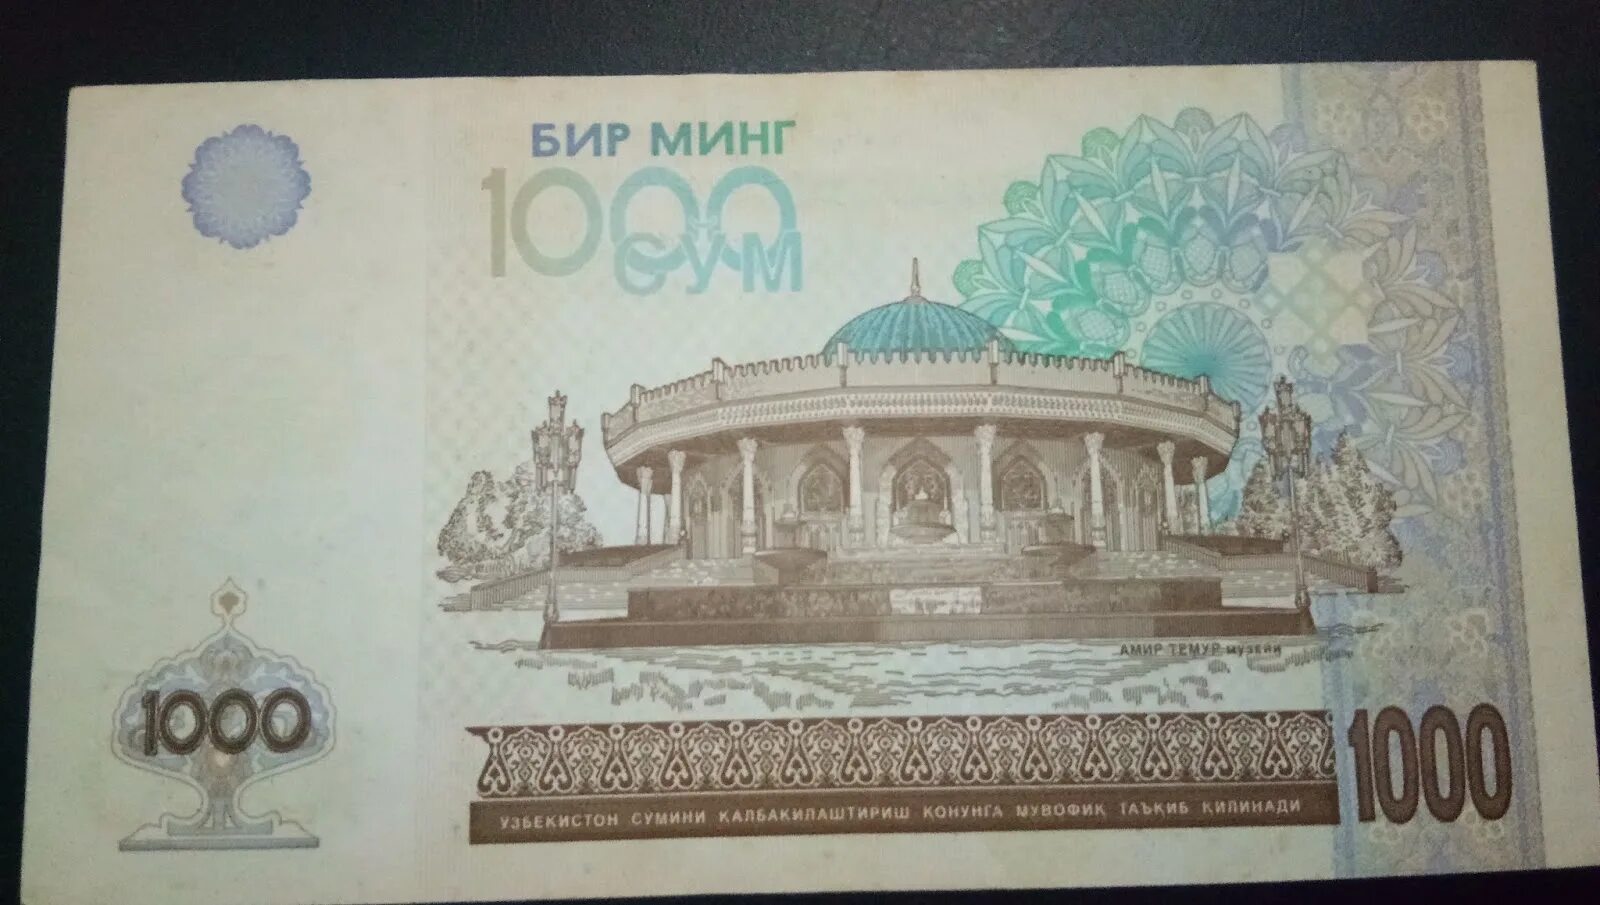 1000 сомов в рублях на сегодня